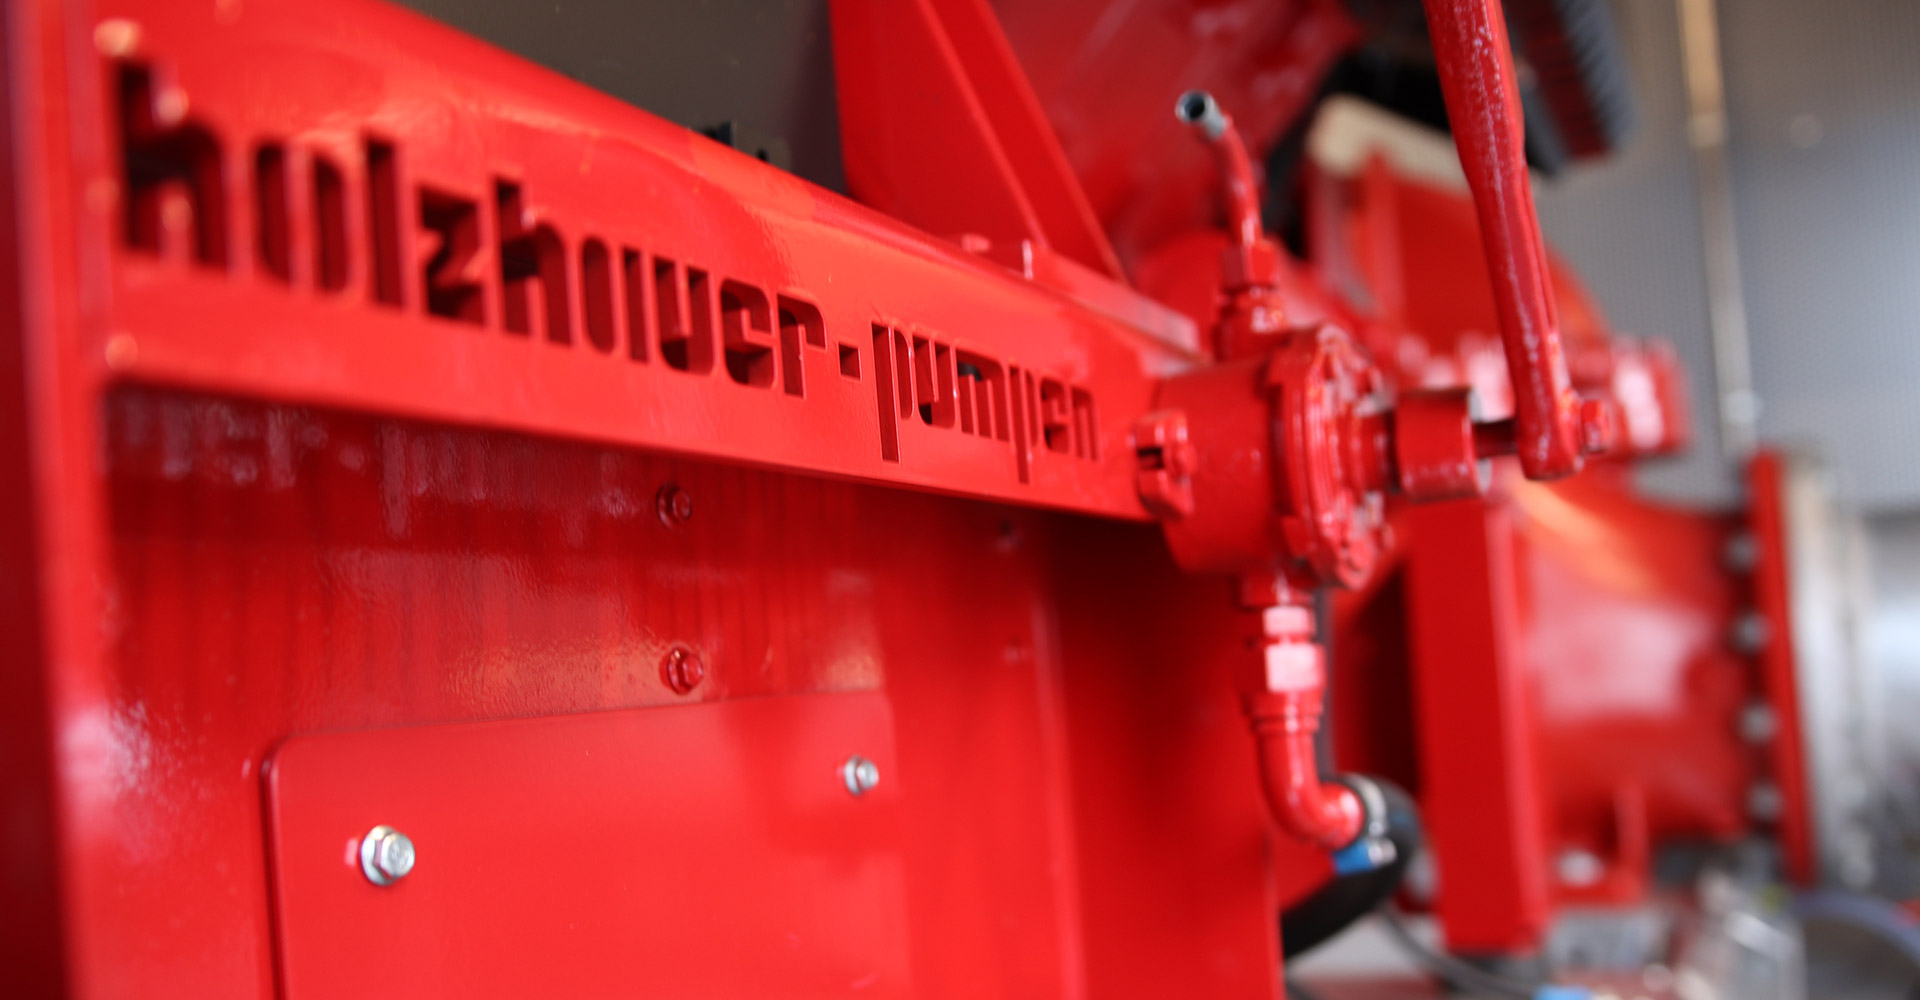 Holzhauer Pumpen GmbH